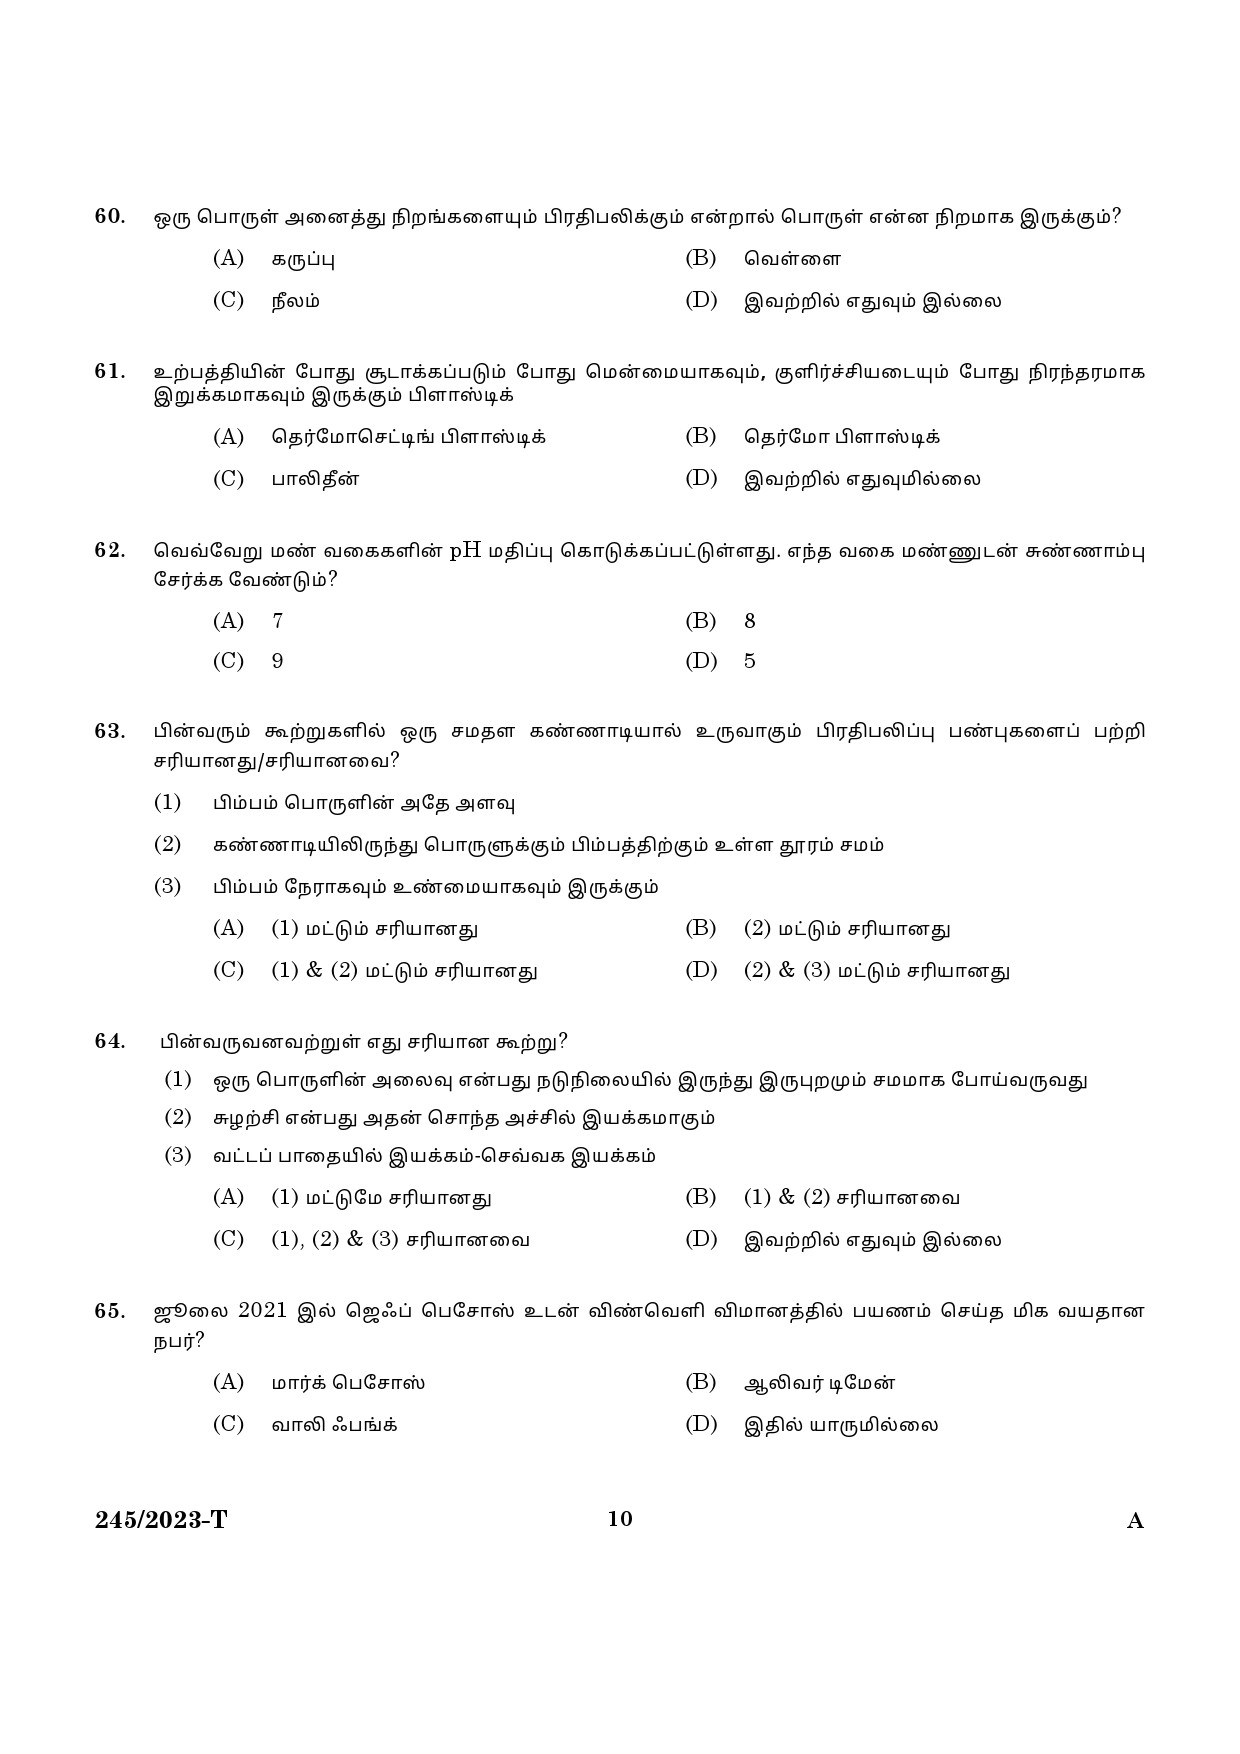 KPSC LGS Tamil Exam 2023 Code 2452023 T 8